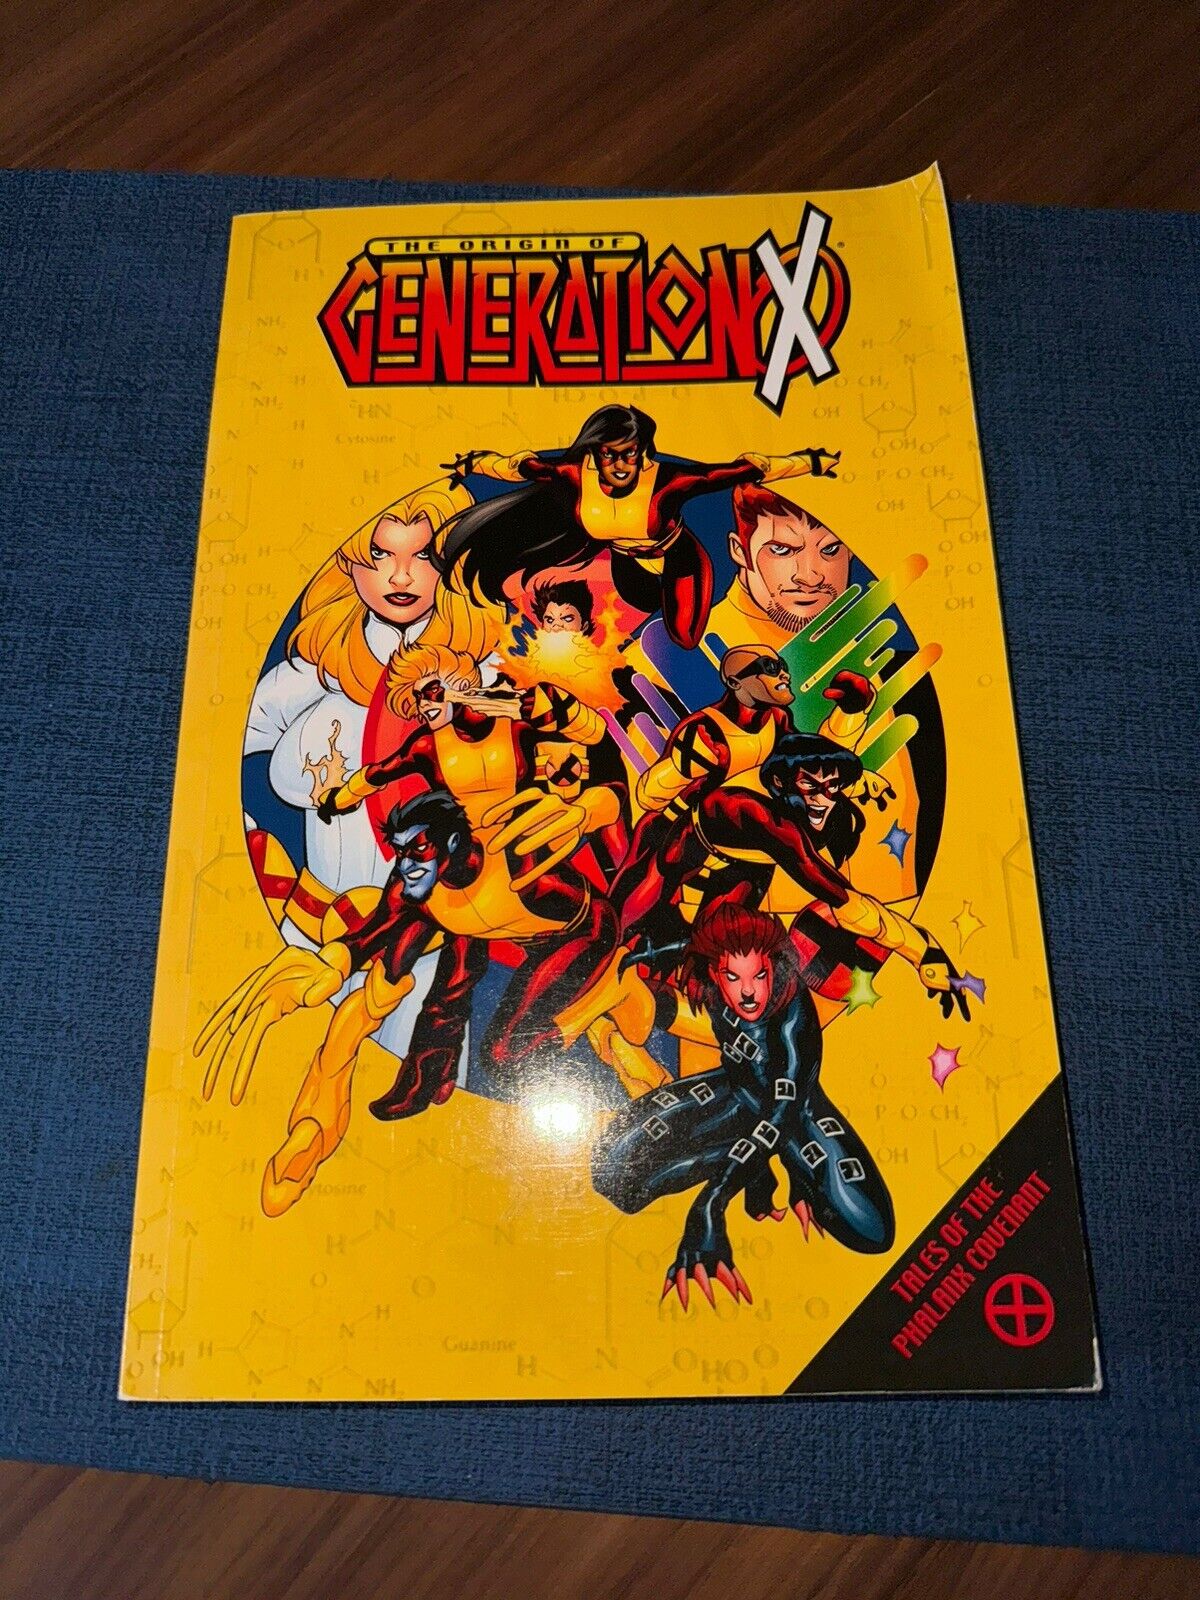 X-Men “Origin of Generation X” by Scott Lobdell (2001, Trade Paperback)